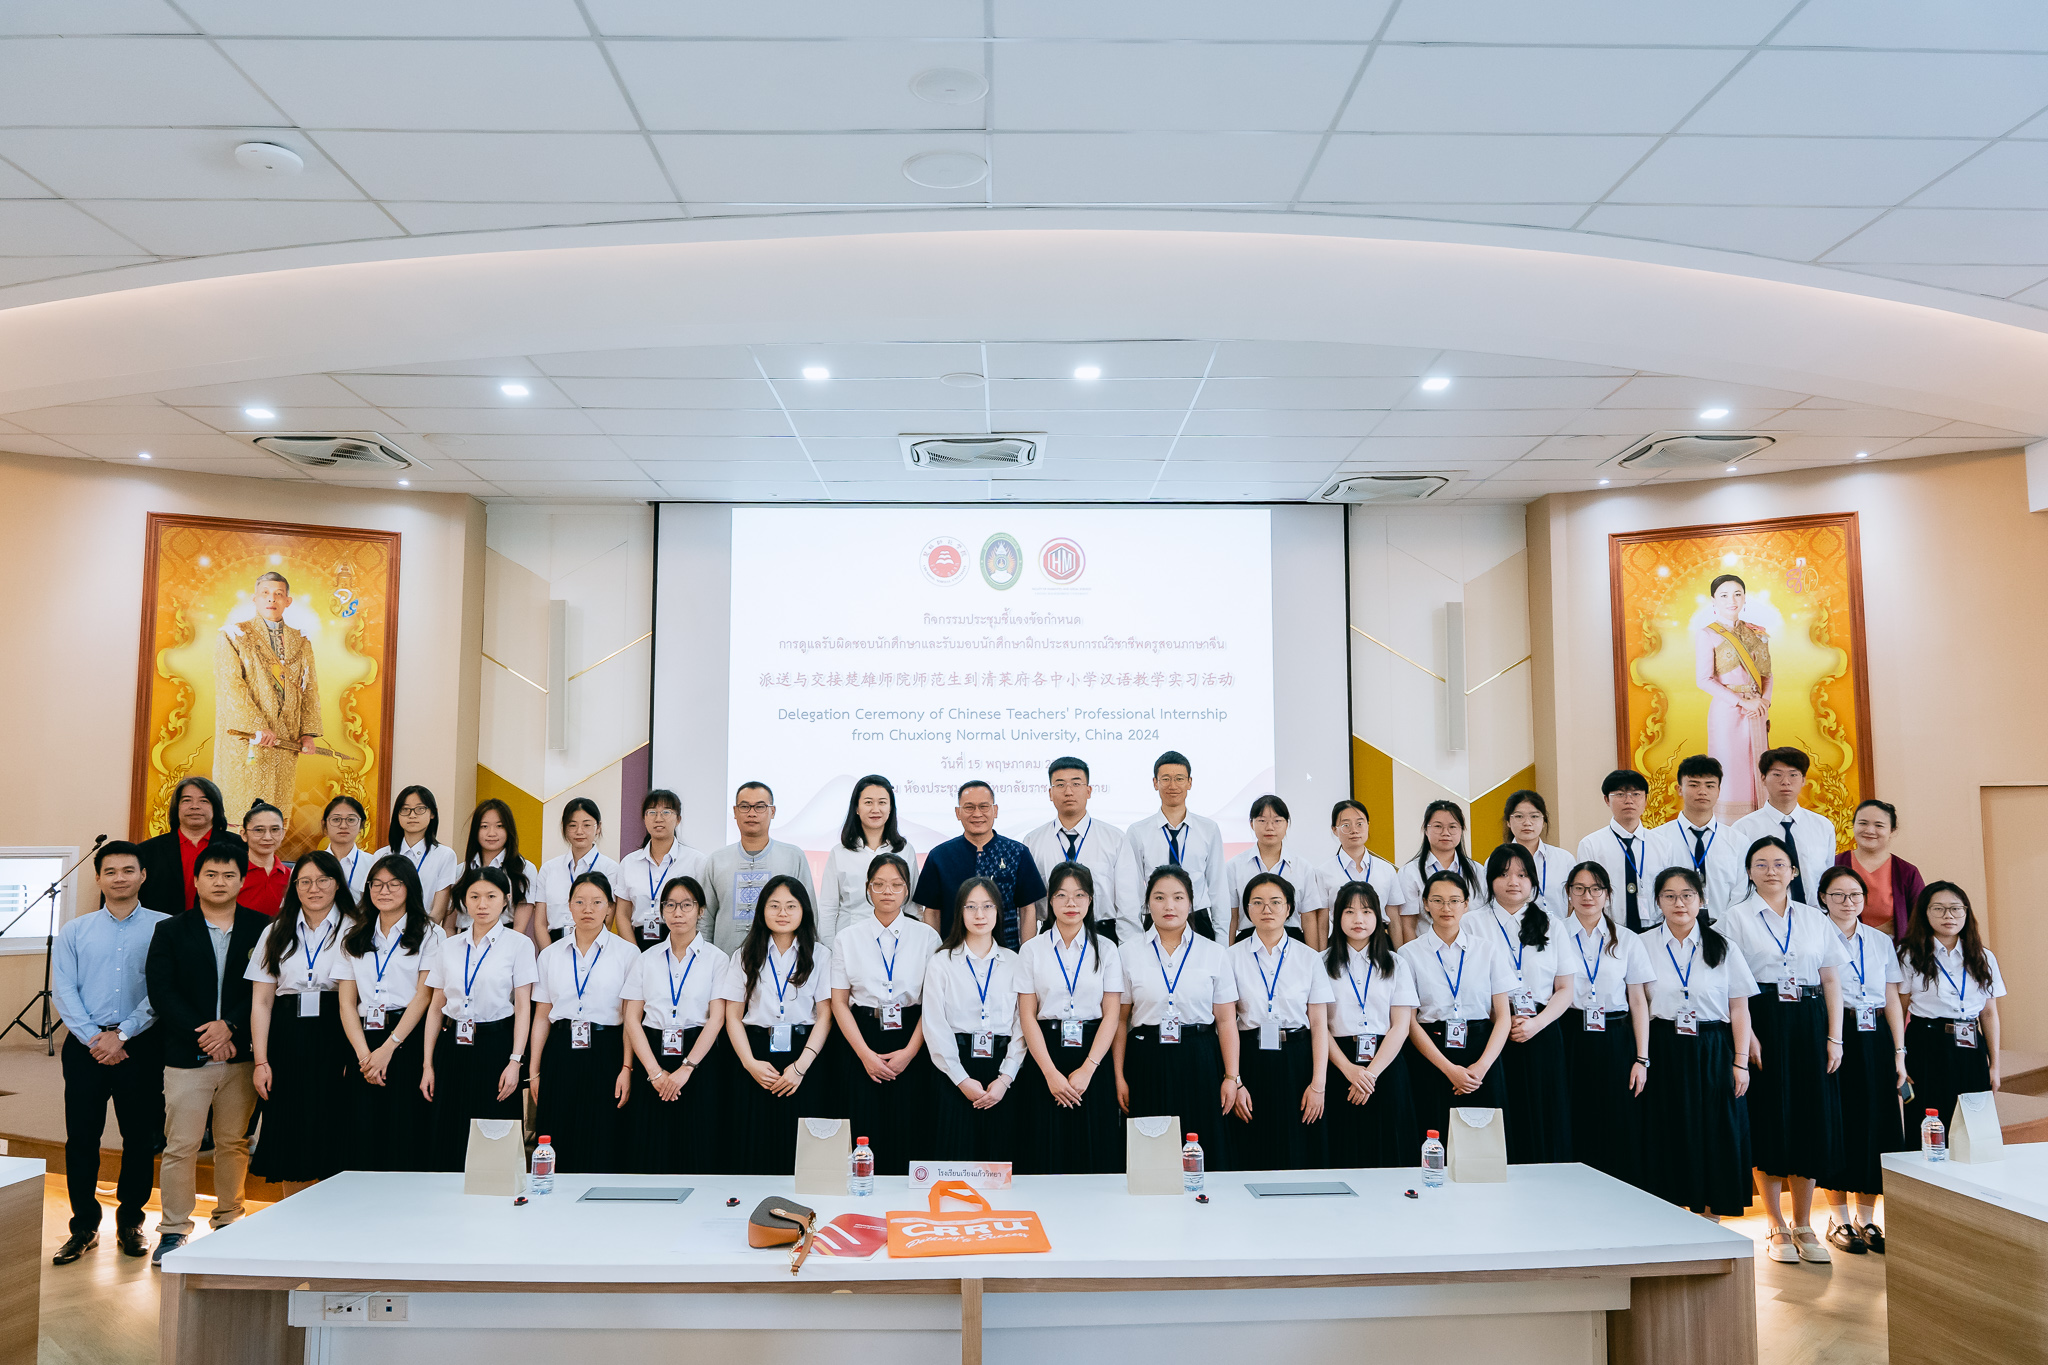 ส่งมอบนักศึกษาฝึกประสบการณ์การสอนภาษาจีนเป็นภาษาต่างประเทศจาก Chuxiong Normal University 